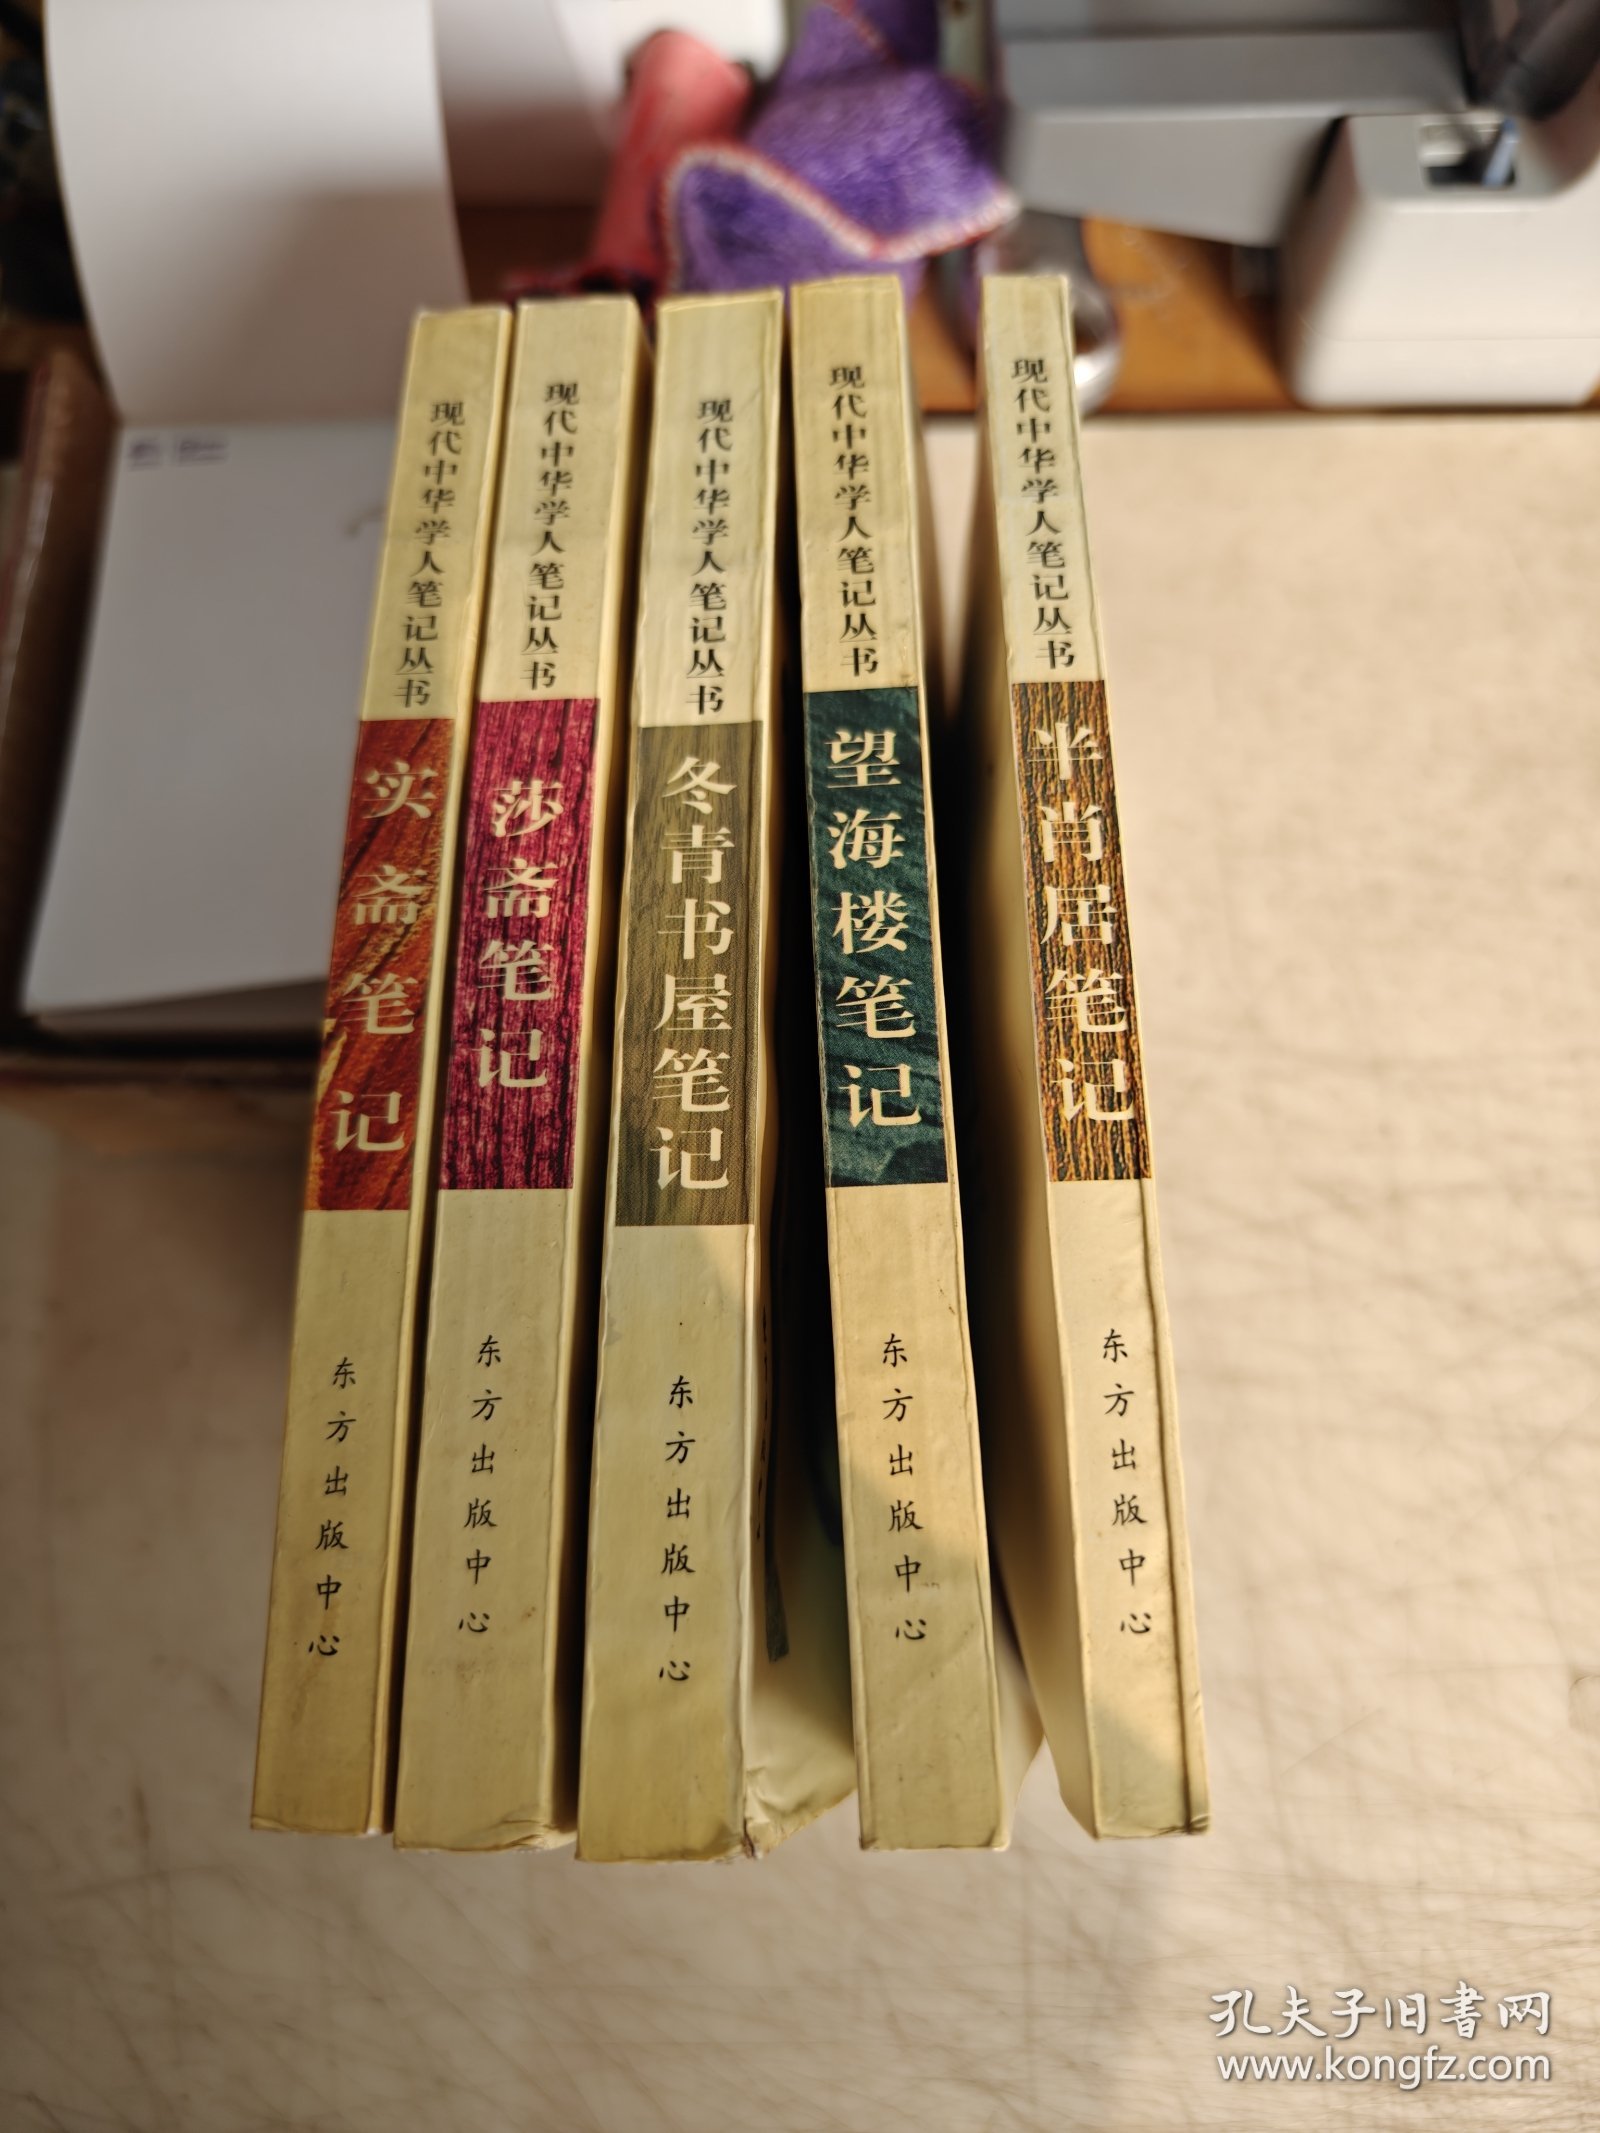 现代中华学人笔记丛书：莎斋笔记，冬青书屋笔记，望海楼笔记。半肖居笔记、实斋笔记.5本合售